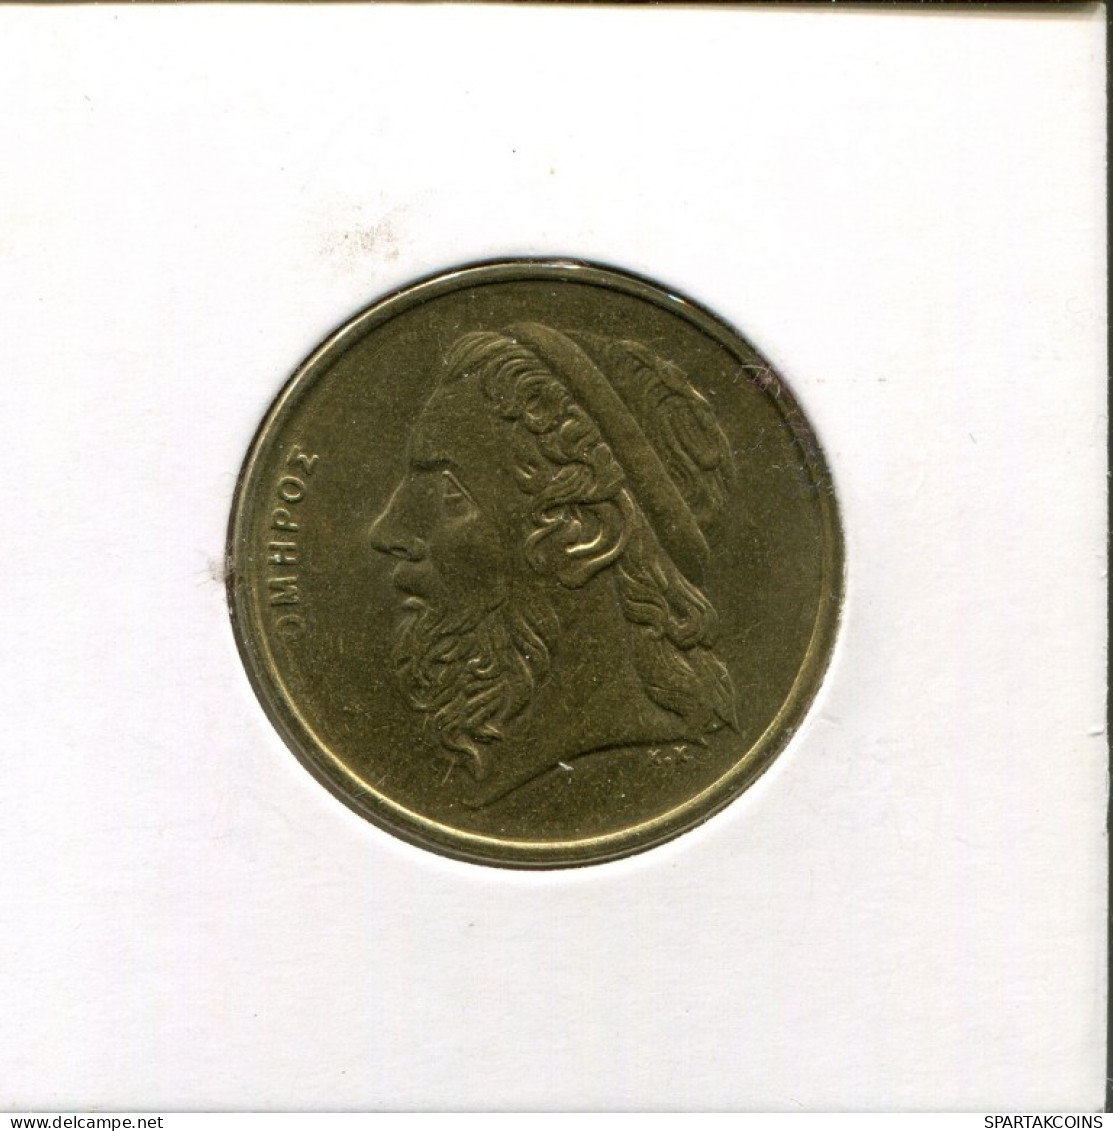 50 DRACHMES 1990 GRECIA GREECE Moneda #AK460.E.A - Greece